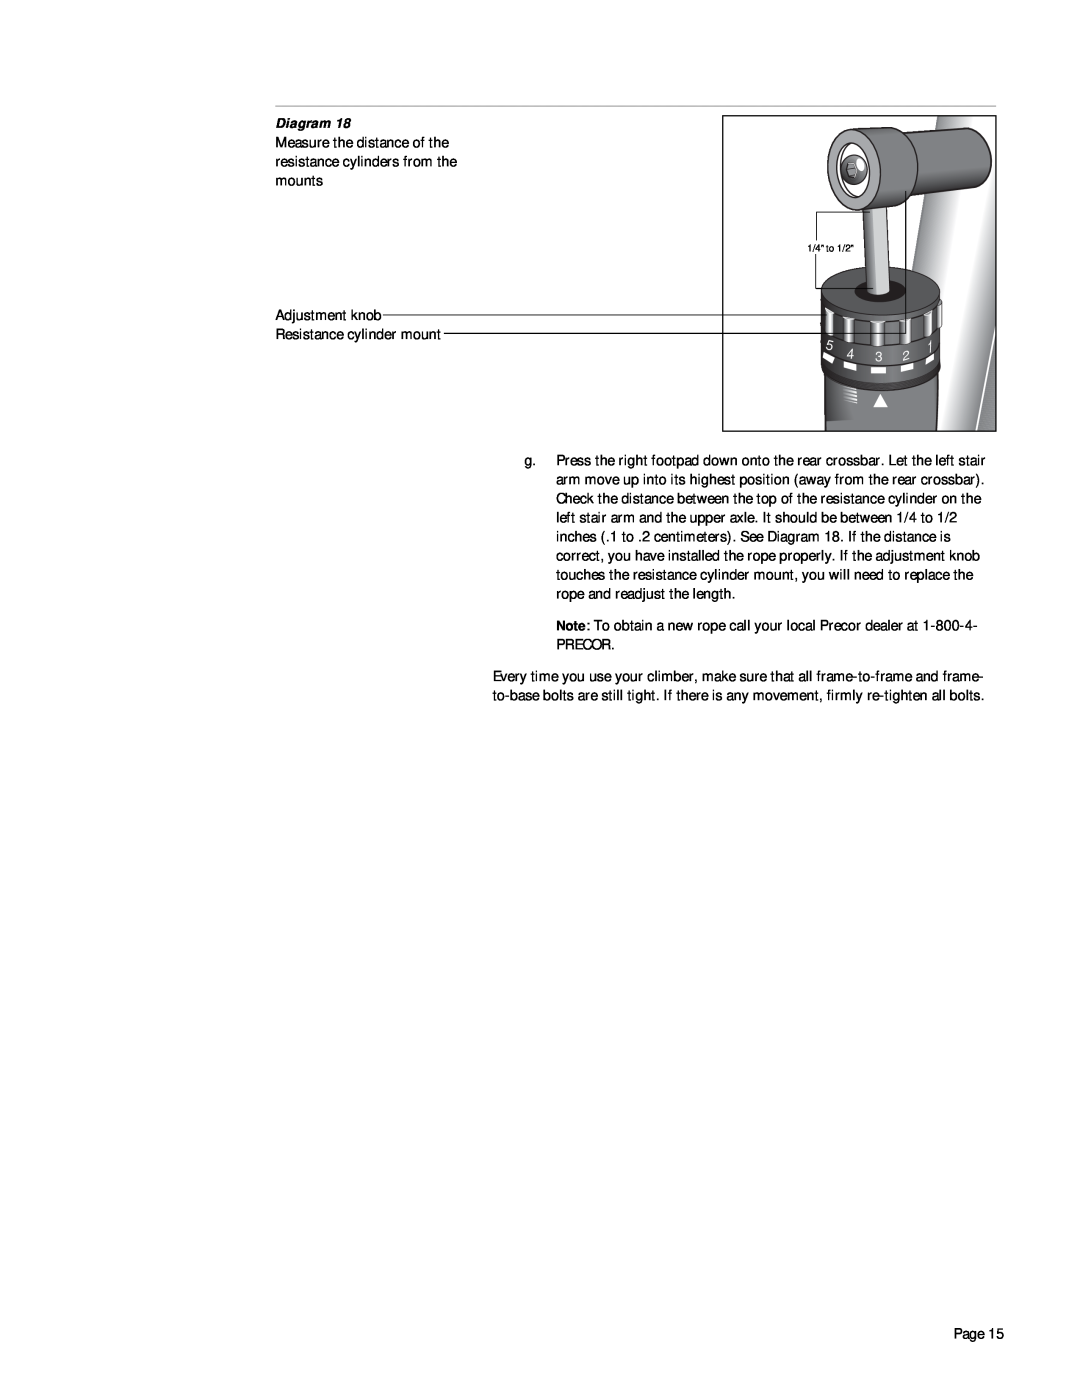 Precor 718e owner manual Adjustment knob Resistance cylinder mount 